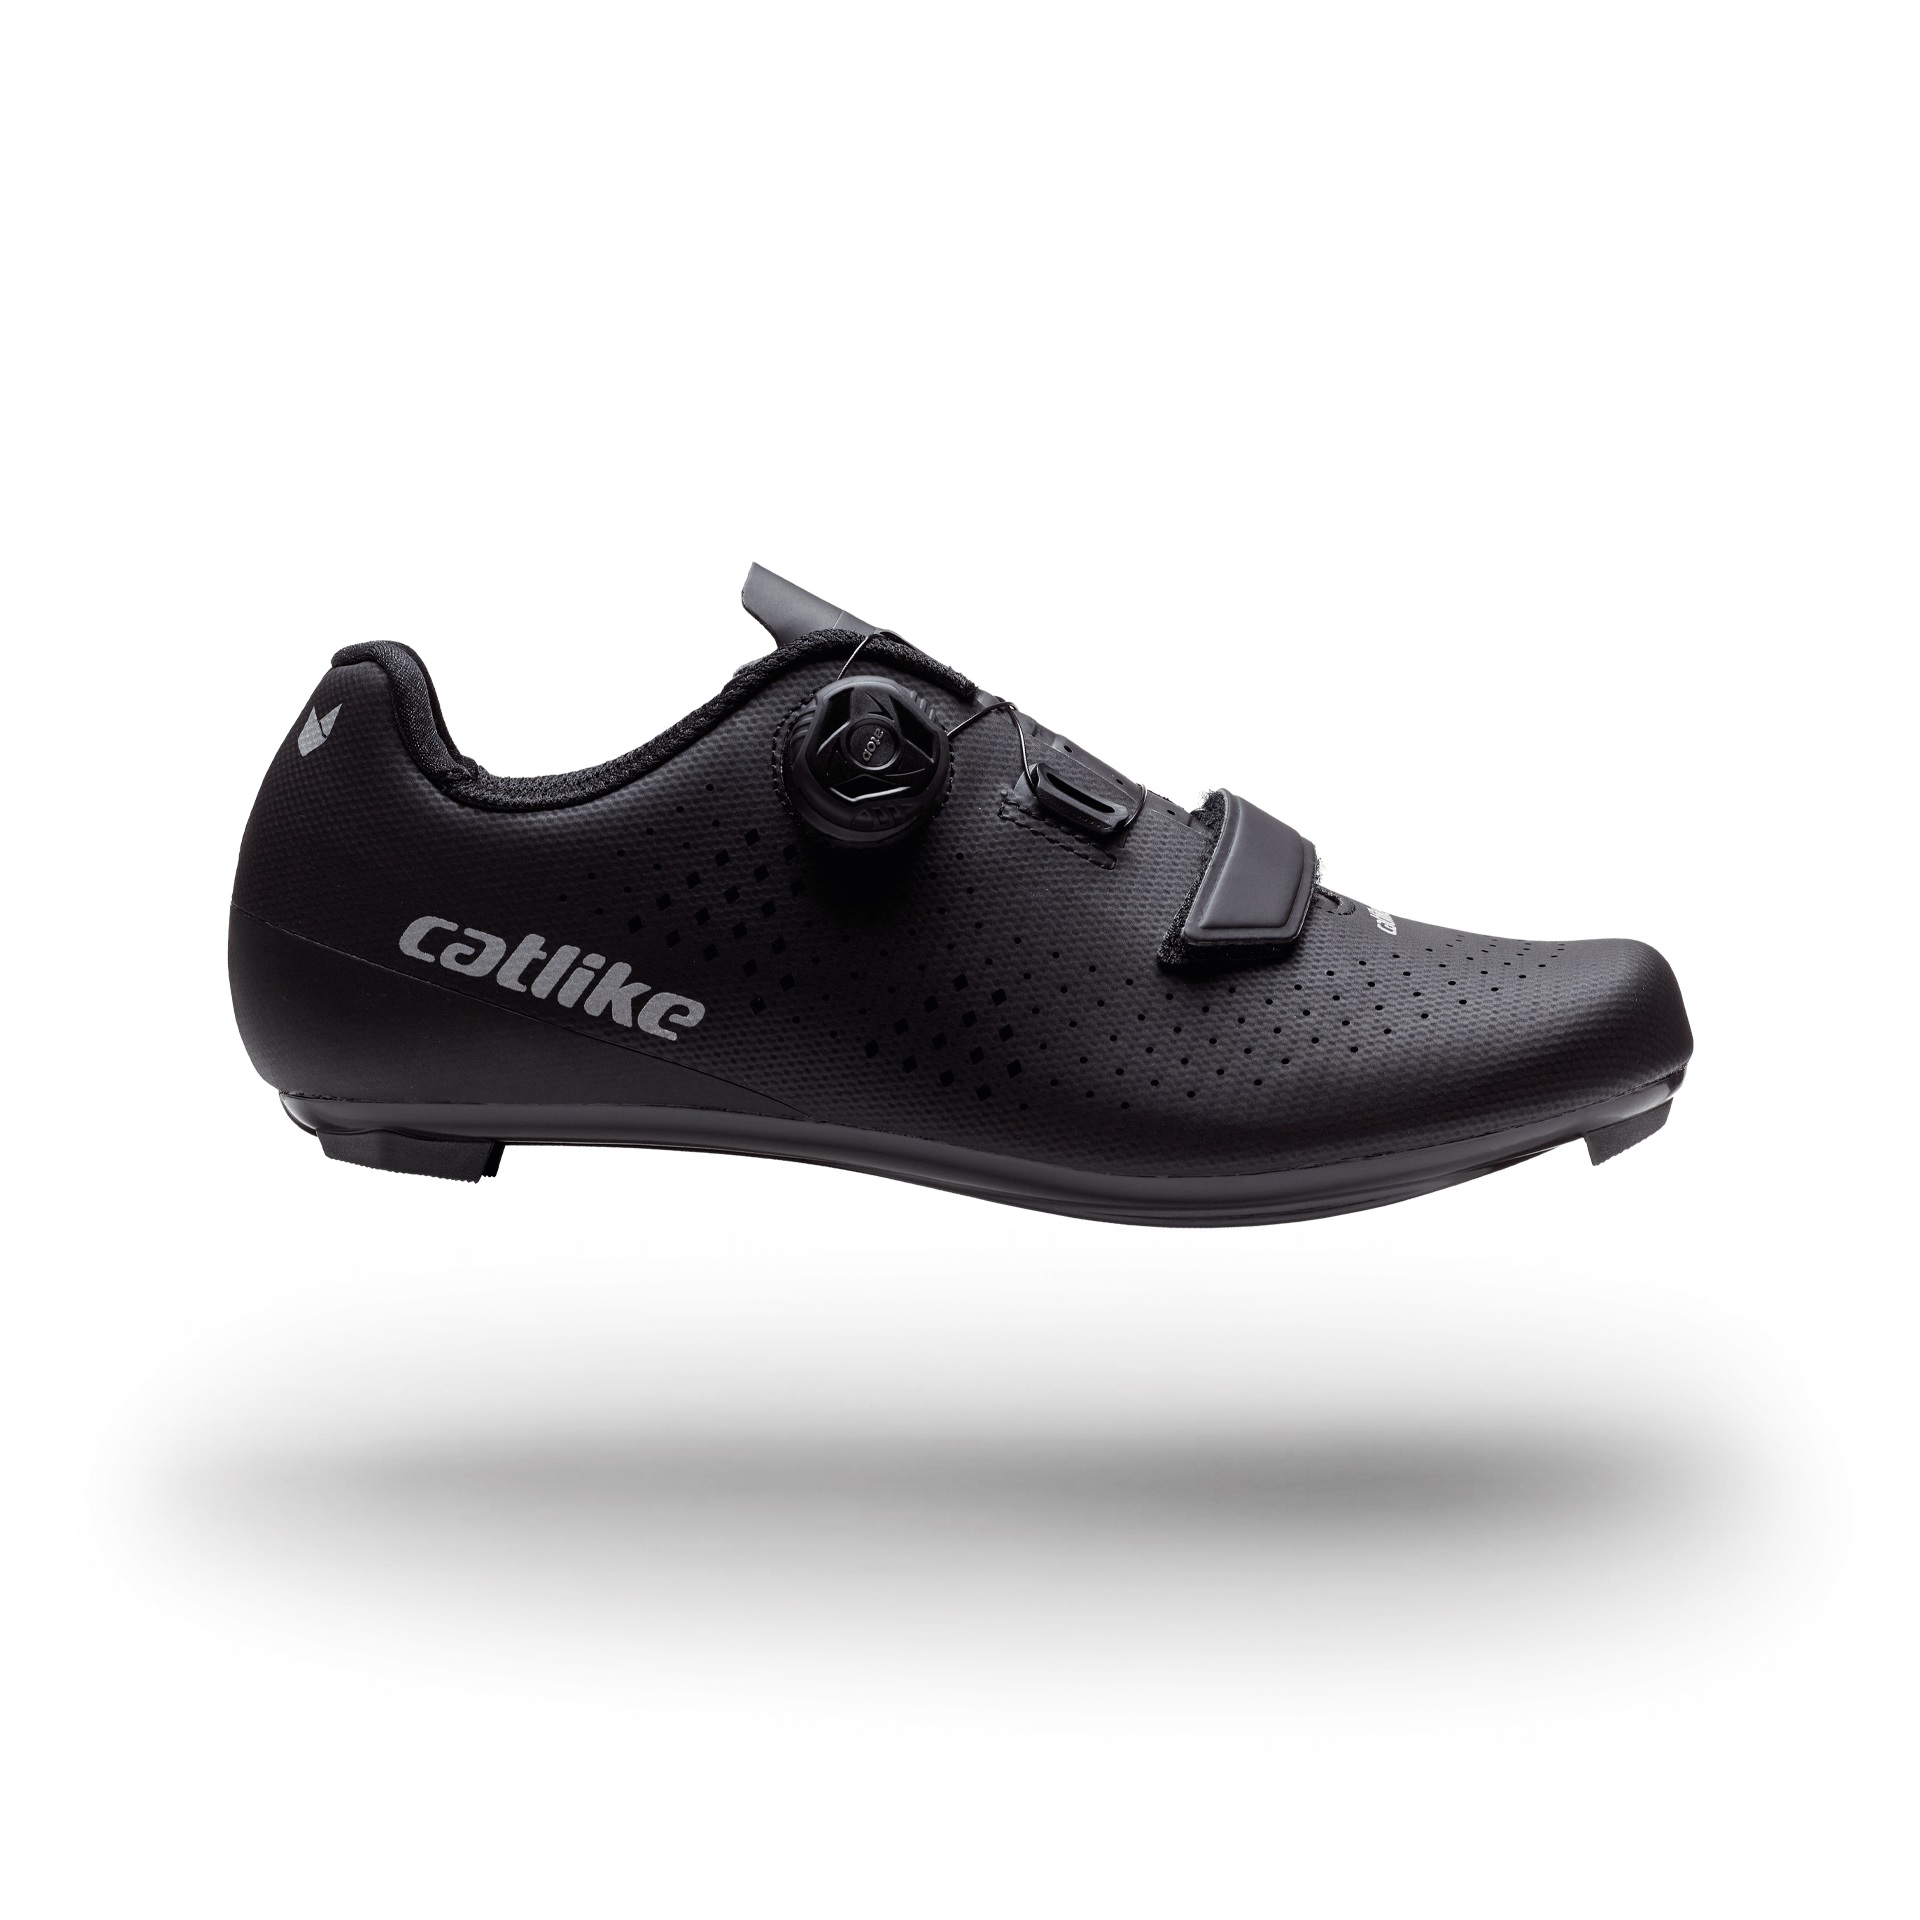 Zapatillas Catlike Kompact´o R1 - negro - 